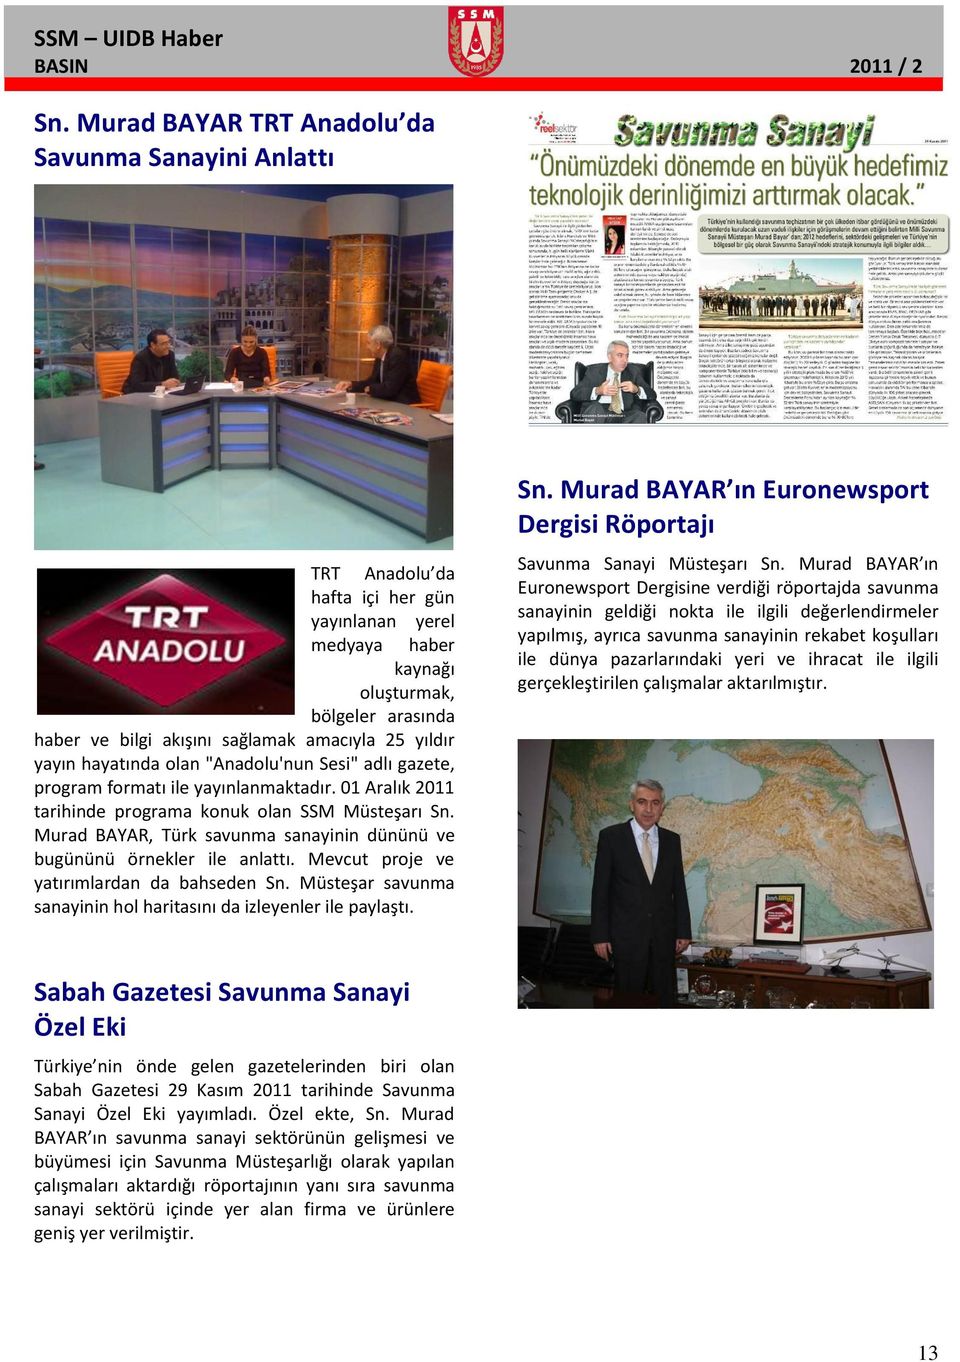 yıldır yayın hayatında olan "Anadolu'nun Sesi" adlı gazete, program formatı ile yayınlanmaktadır. 01 Aralık 2011 tarihinde programa konuk olan SSM Müsteşarı Sn.